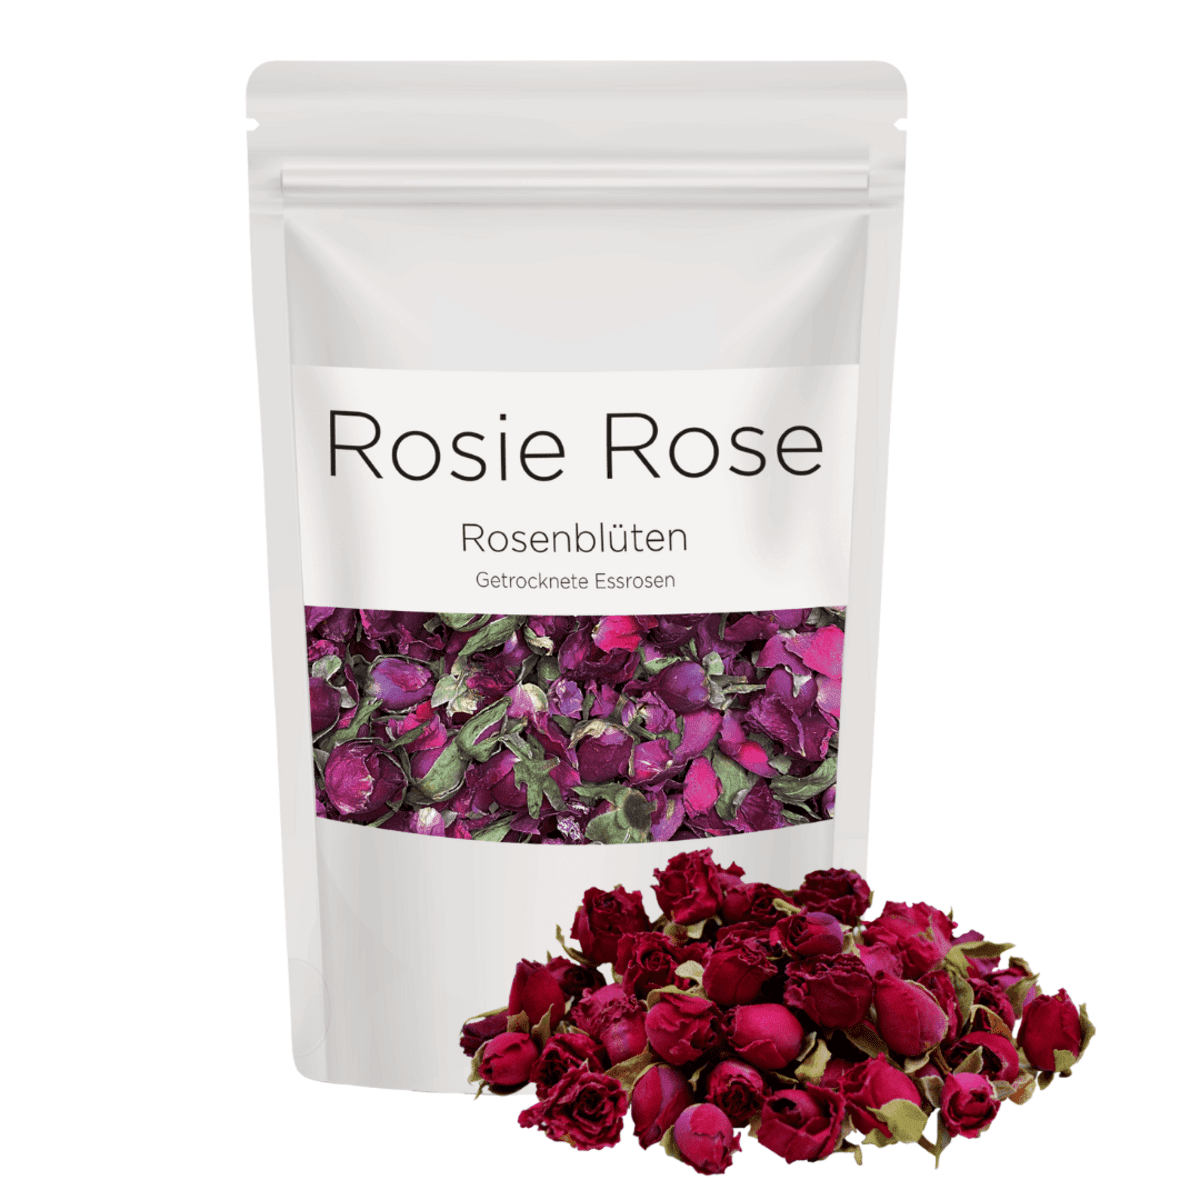 Verzaubern Sie Ihre Gäste mit unseren essbaren Dark Pink Blüten und setzen Sie stilvolle Akzente auf Ihren Torten, Gebäcken oder Desserts. Unsere getrockneten Rosenblüten für Torten sind eine wunderschöne Art, um Ihre Kreationen zu dekorieren und ihnen das gewisse Etwas zu verleihen. Entdecken Sie jetzt unsere essbaren Blumen für Torten. Von ROSIE ROSE im Online-Shop kaufen